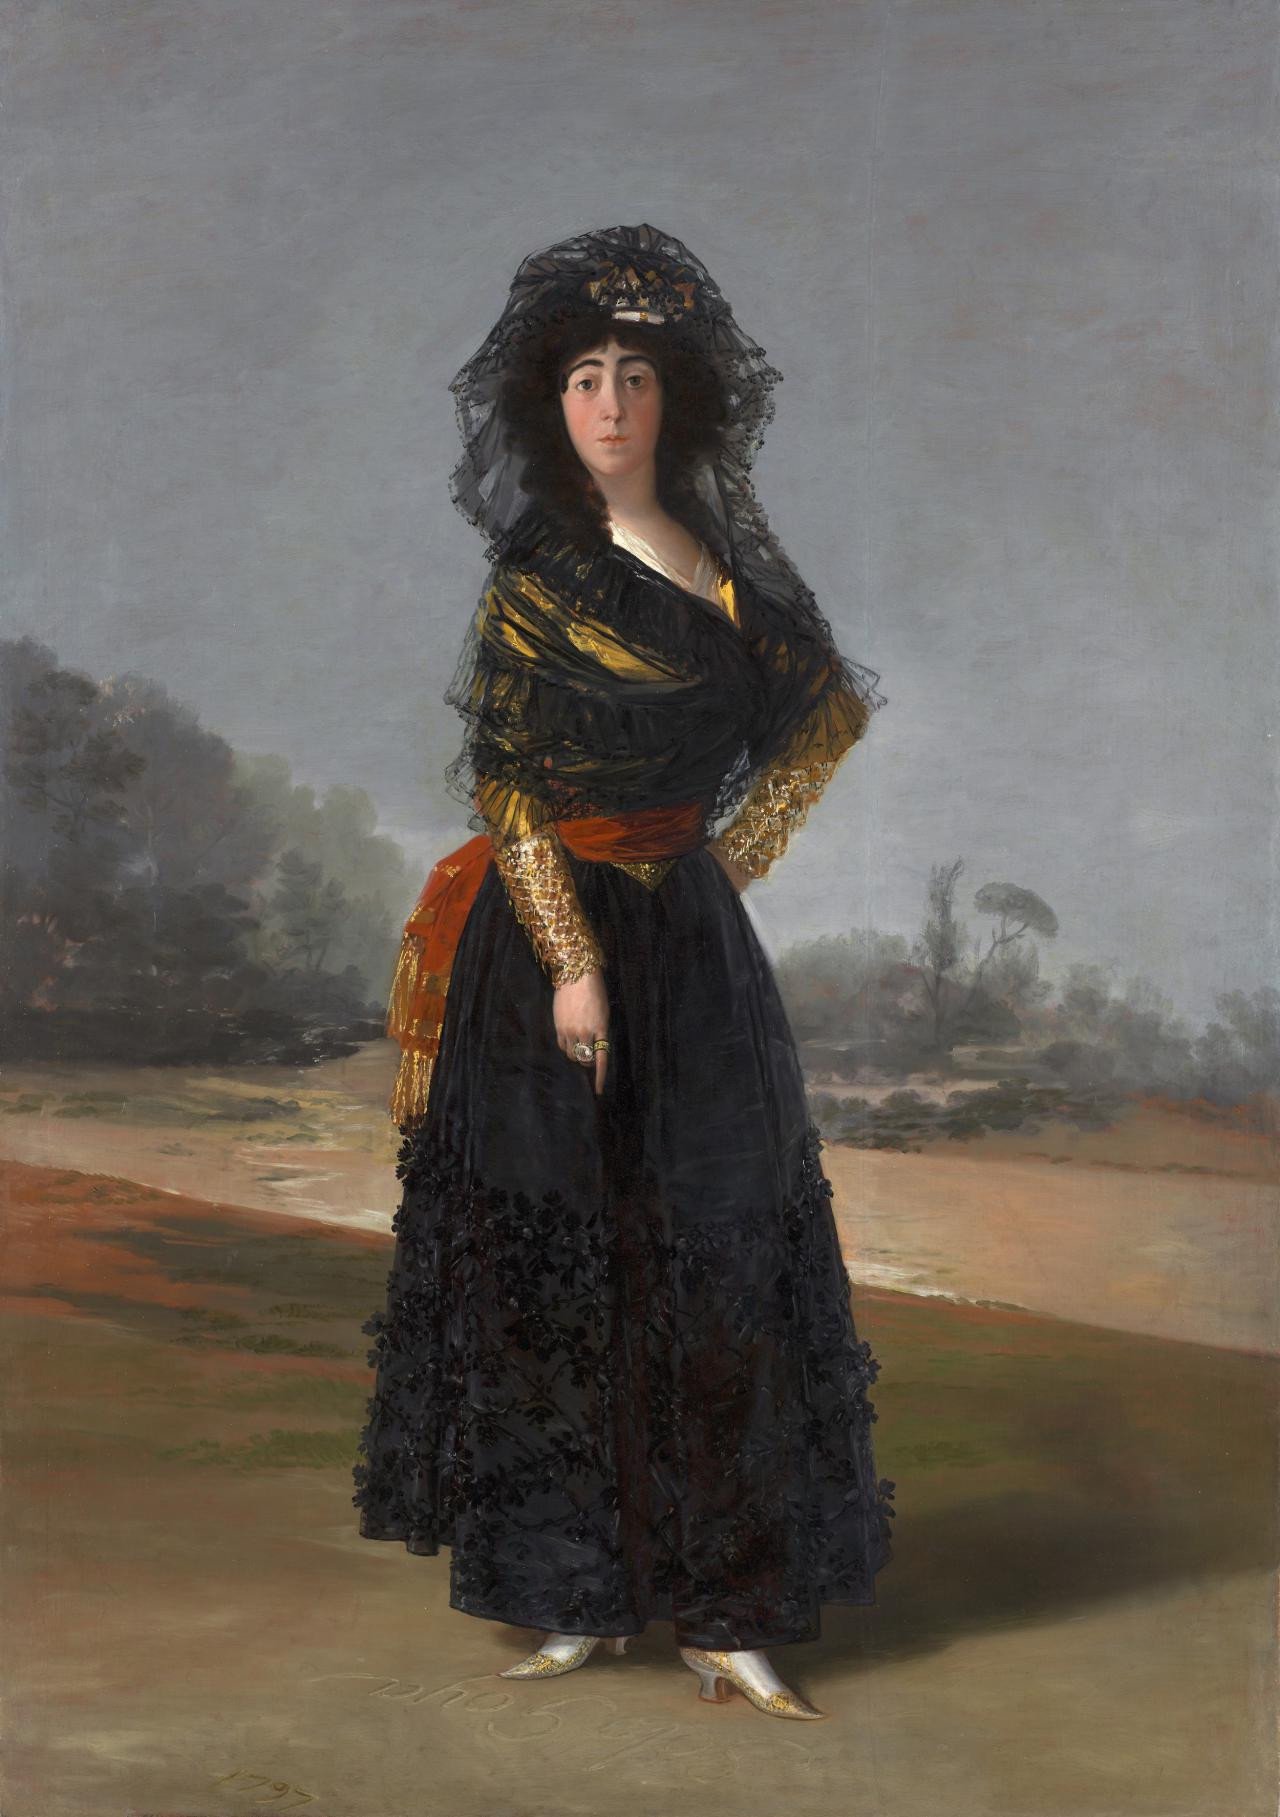 阿尔巴公爵夫人 by 弗朗西斯科· 戈雅 - 1797 - 210 x 148 cm 西班牙协会博物馆和图书馆